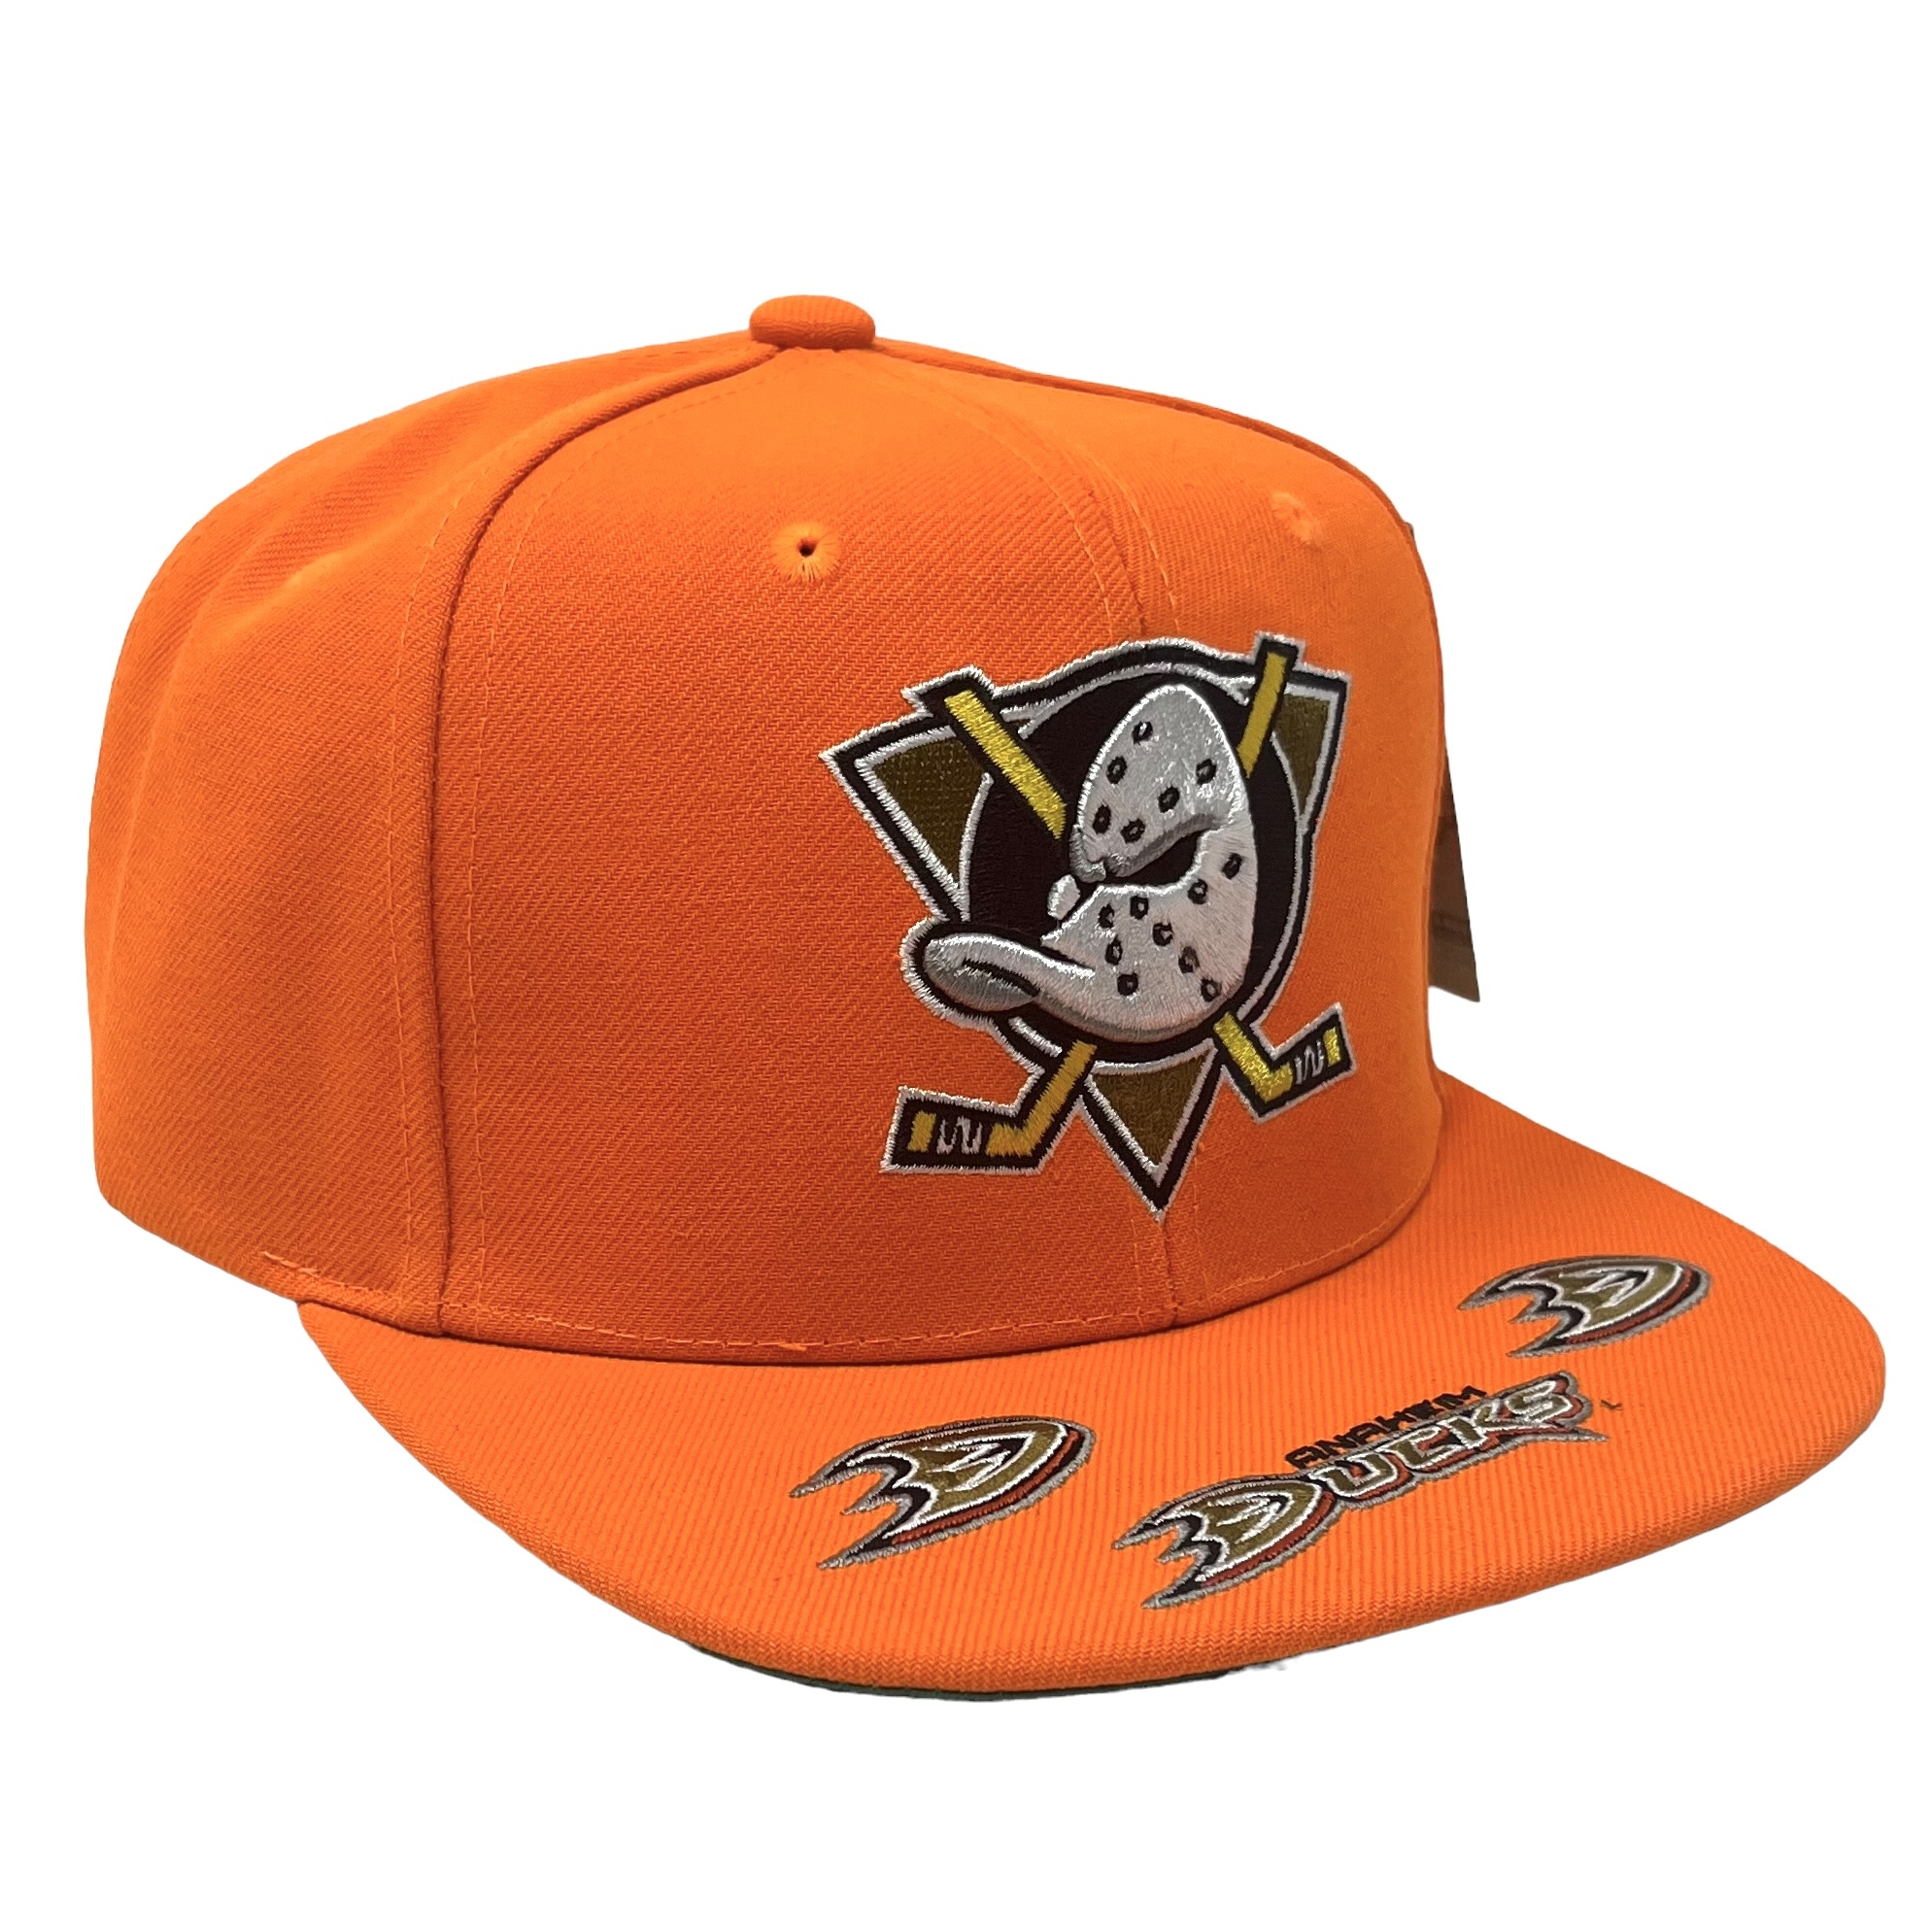 Men's Anaheim Ducks Mitchell & Ness Cream/Orange Vintage Snapback Hat